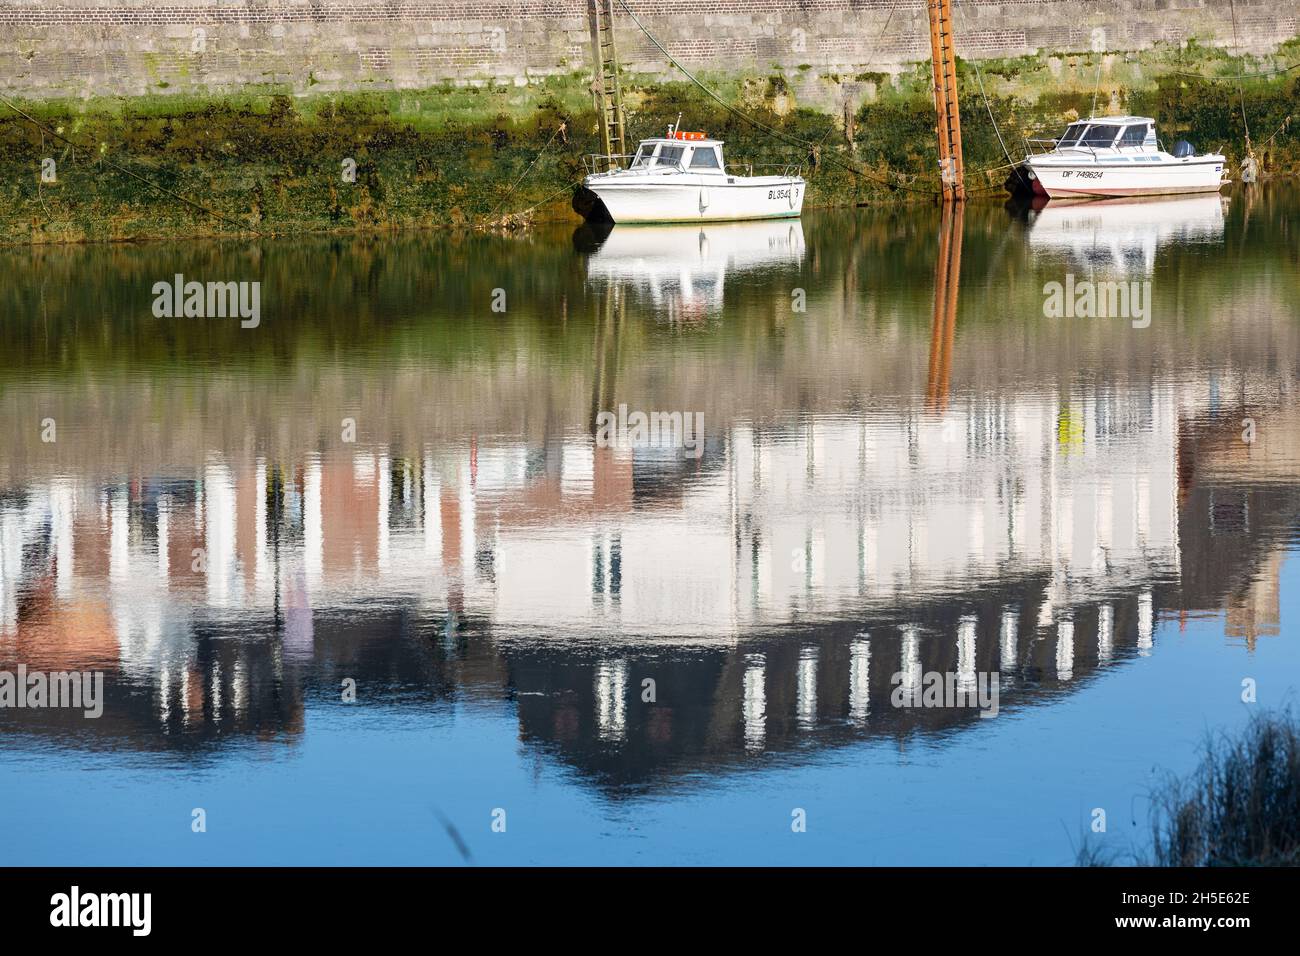 Petits bateaux de pêche amarrés à marée basse.Réflexions de maisons construites sur le quai.Saint-Valery, Baie de somme, France Banque D'Images